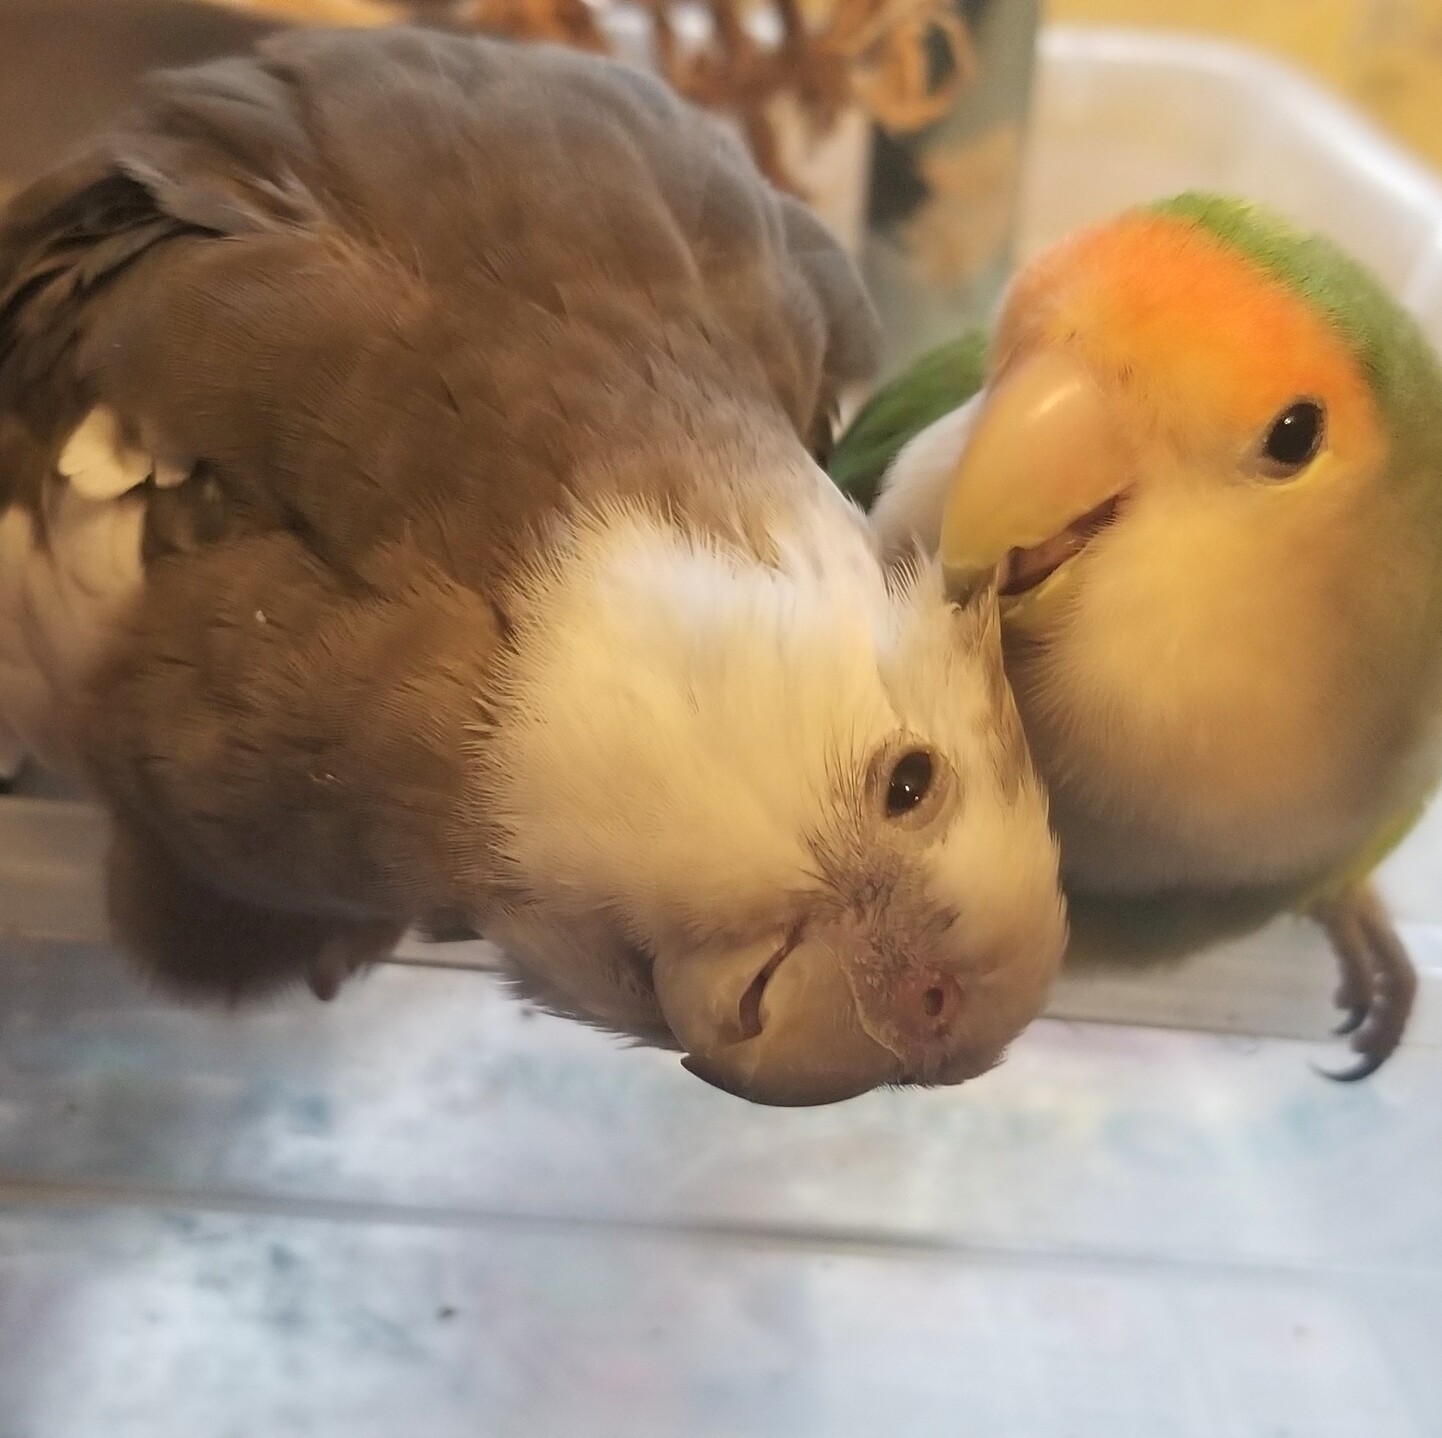 lovebird preens cockatiel, who is in bliss